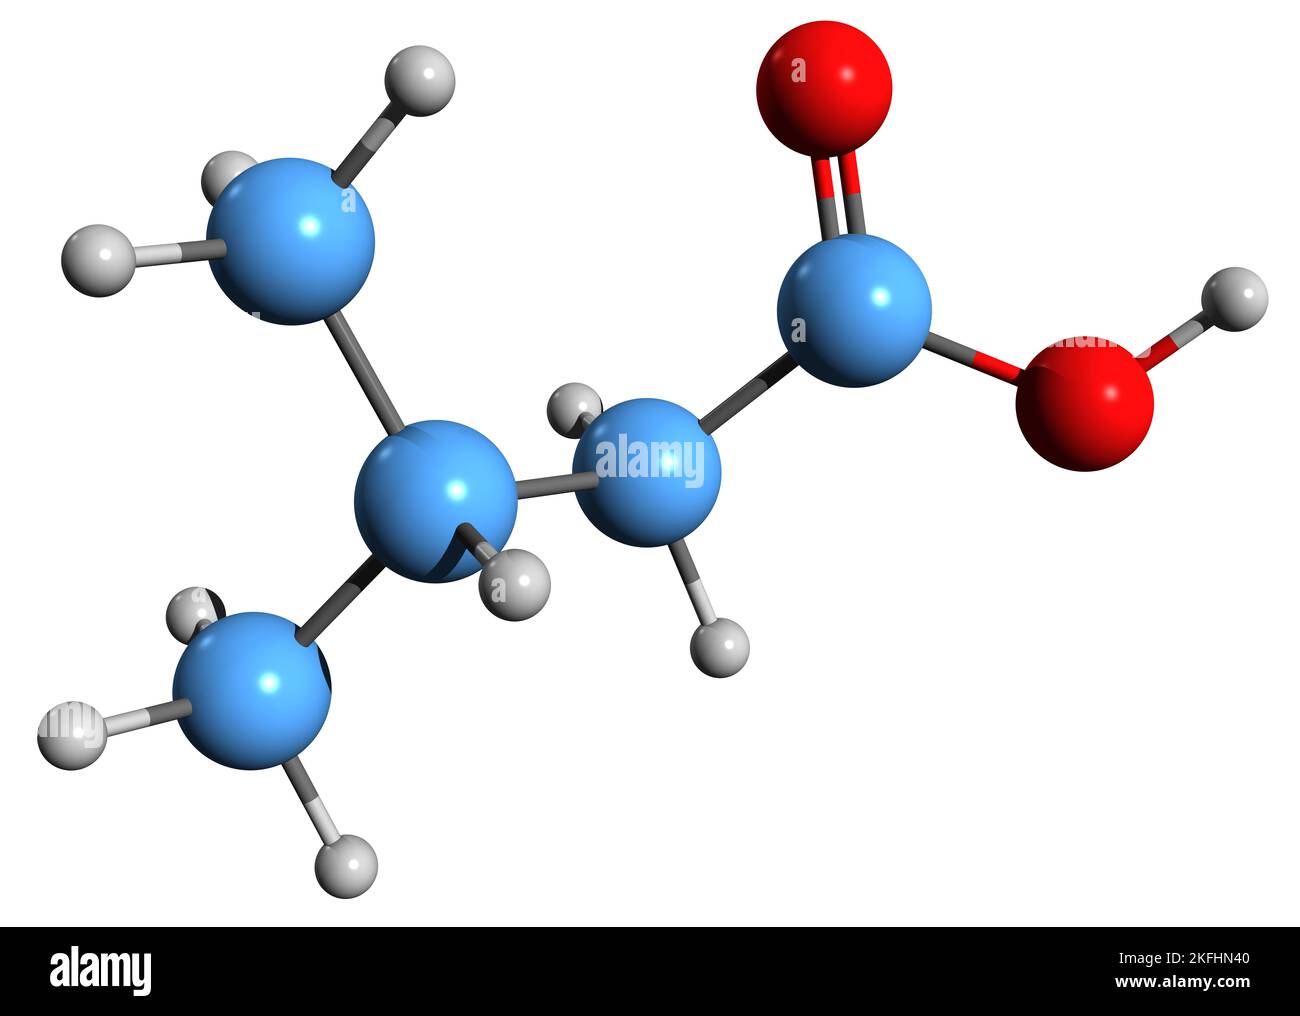 3D immagine della formula scheletrica dell'acido 3-metilbutanoico - struttura chimica molecolare dell'acido Delfinico isolato su sfondo bianco Foto Stock